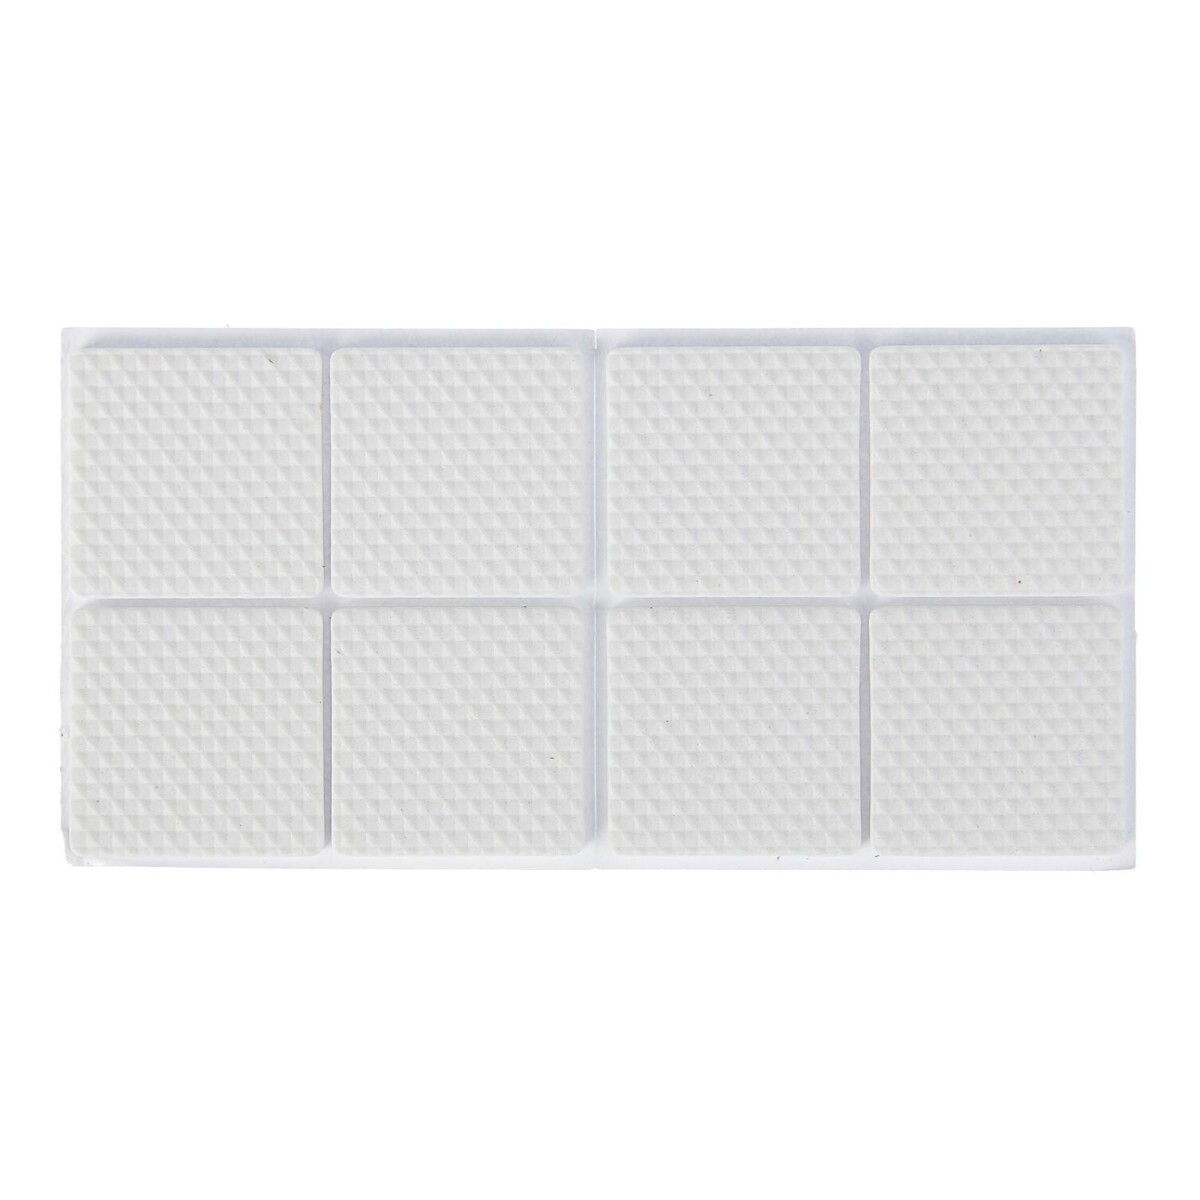 Накладка мебельная квадратная tundra, размер 38 х 38 мм, 8 шт, полимерная, цвет белый накладка 13″ ubear grain case белый